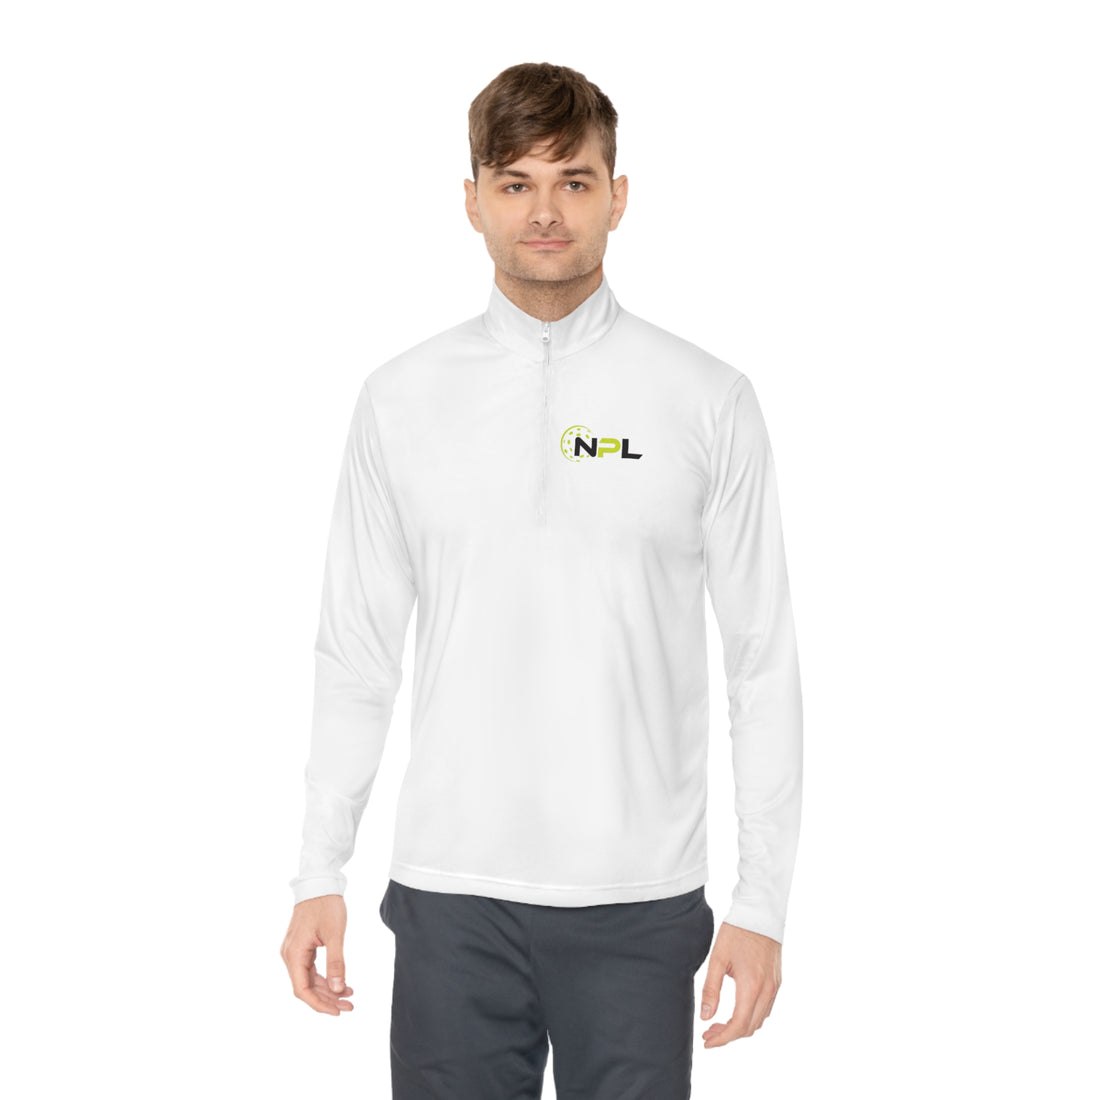 NPL™ Unisex Quarter-Zip Long Sleeve Shirt